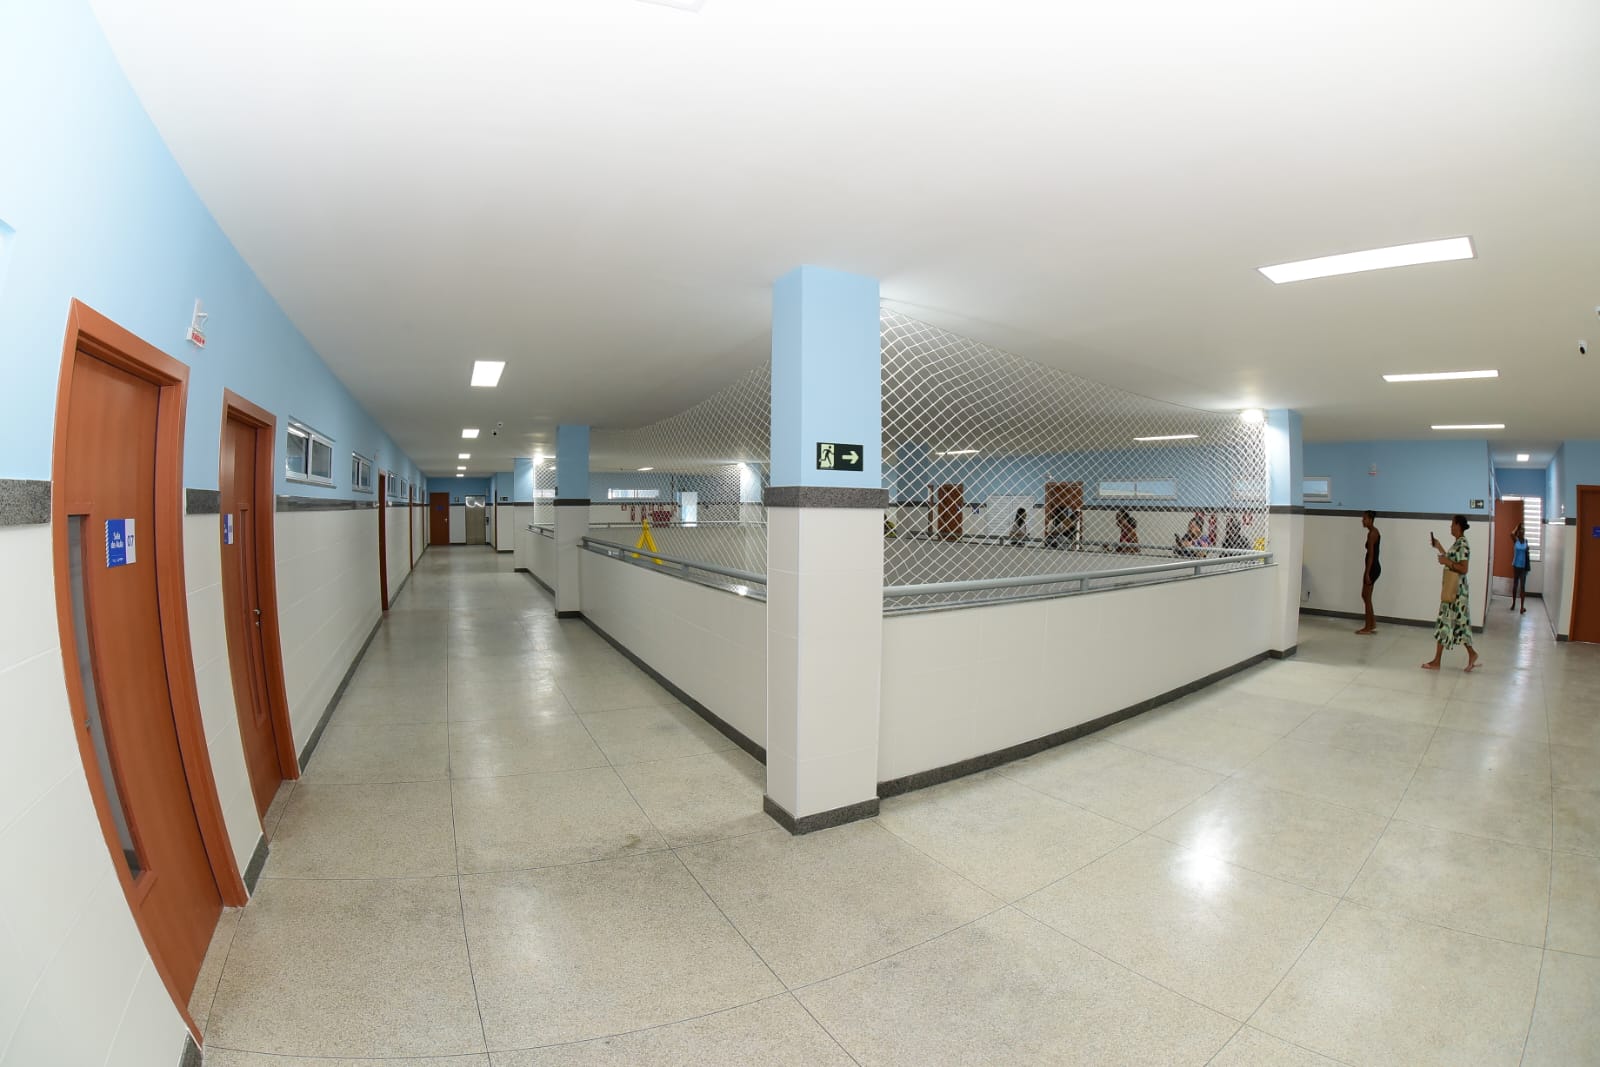 Prefeitura inaugura escola reconstruída em Valéria com salas climatizadas e capacidade para atender 840 alunos